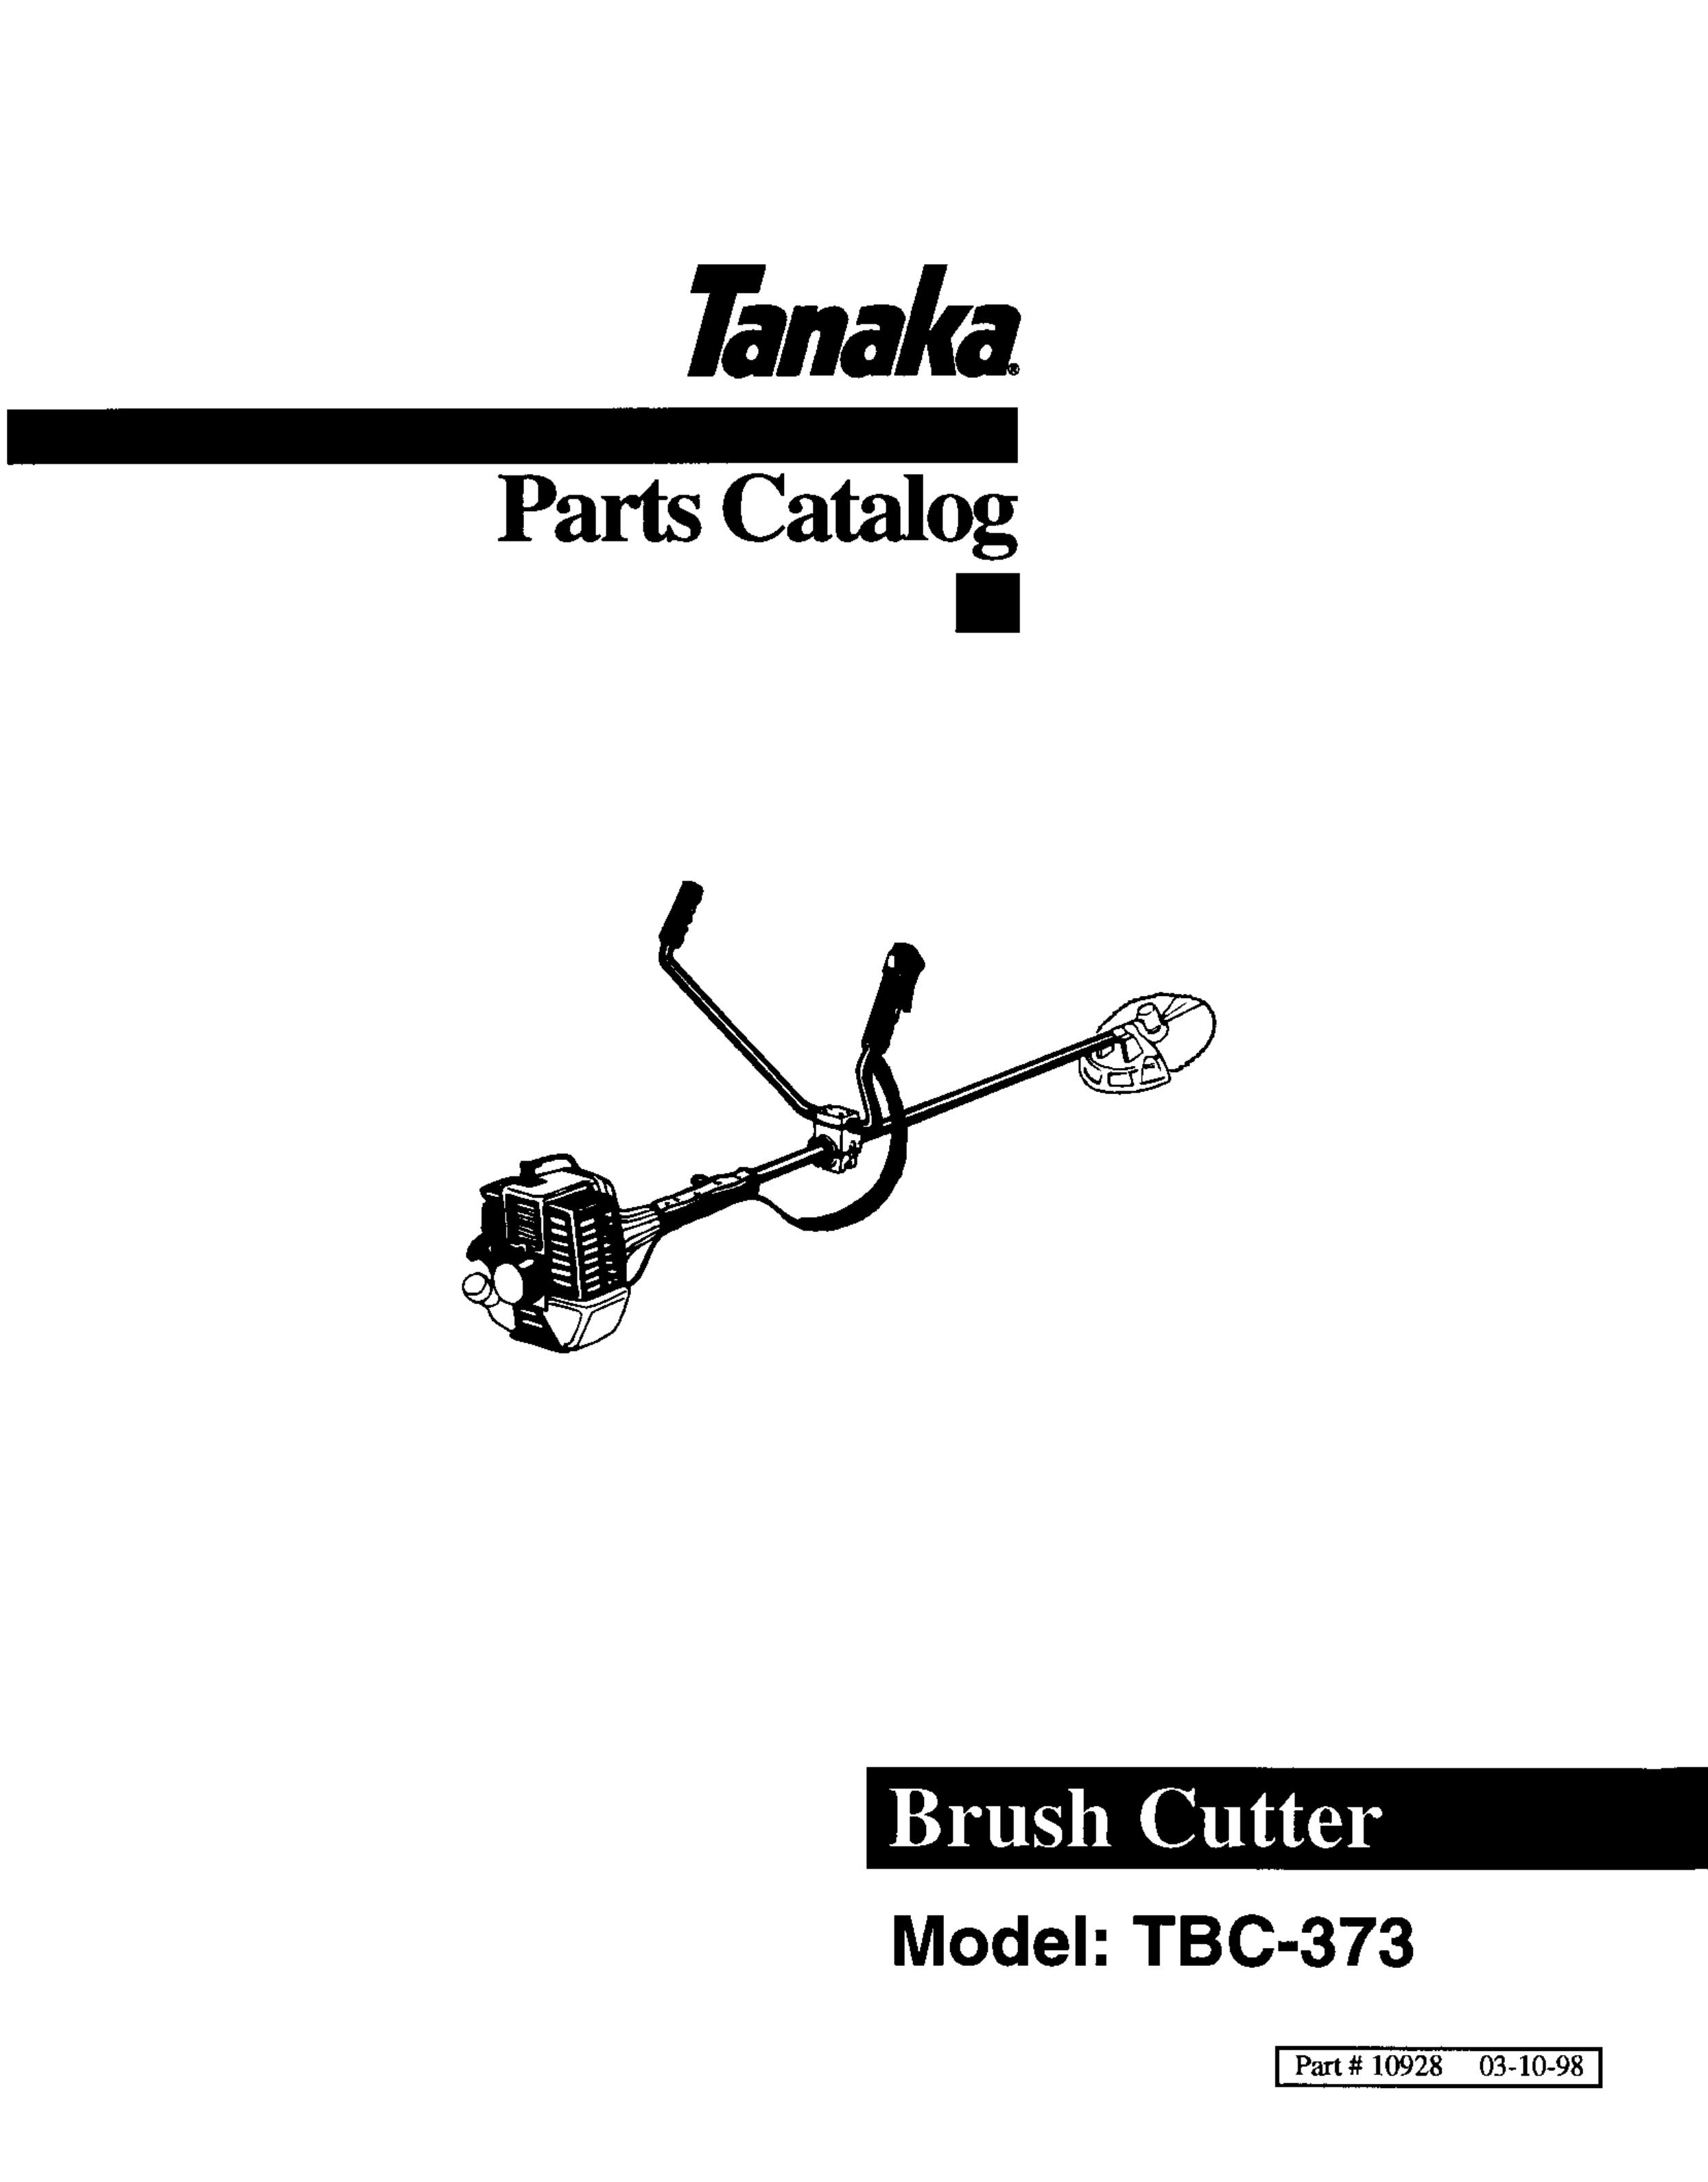 Tanaka TBC-373 Brush Cutter User Manual